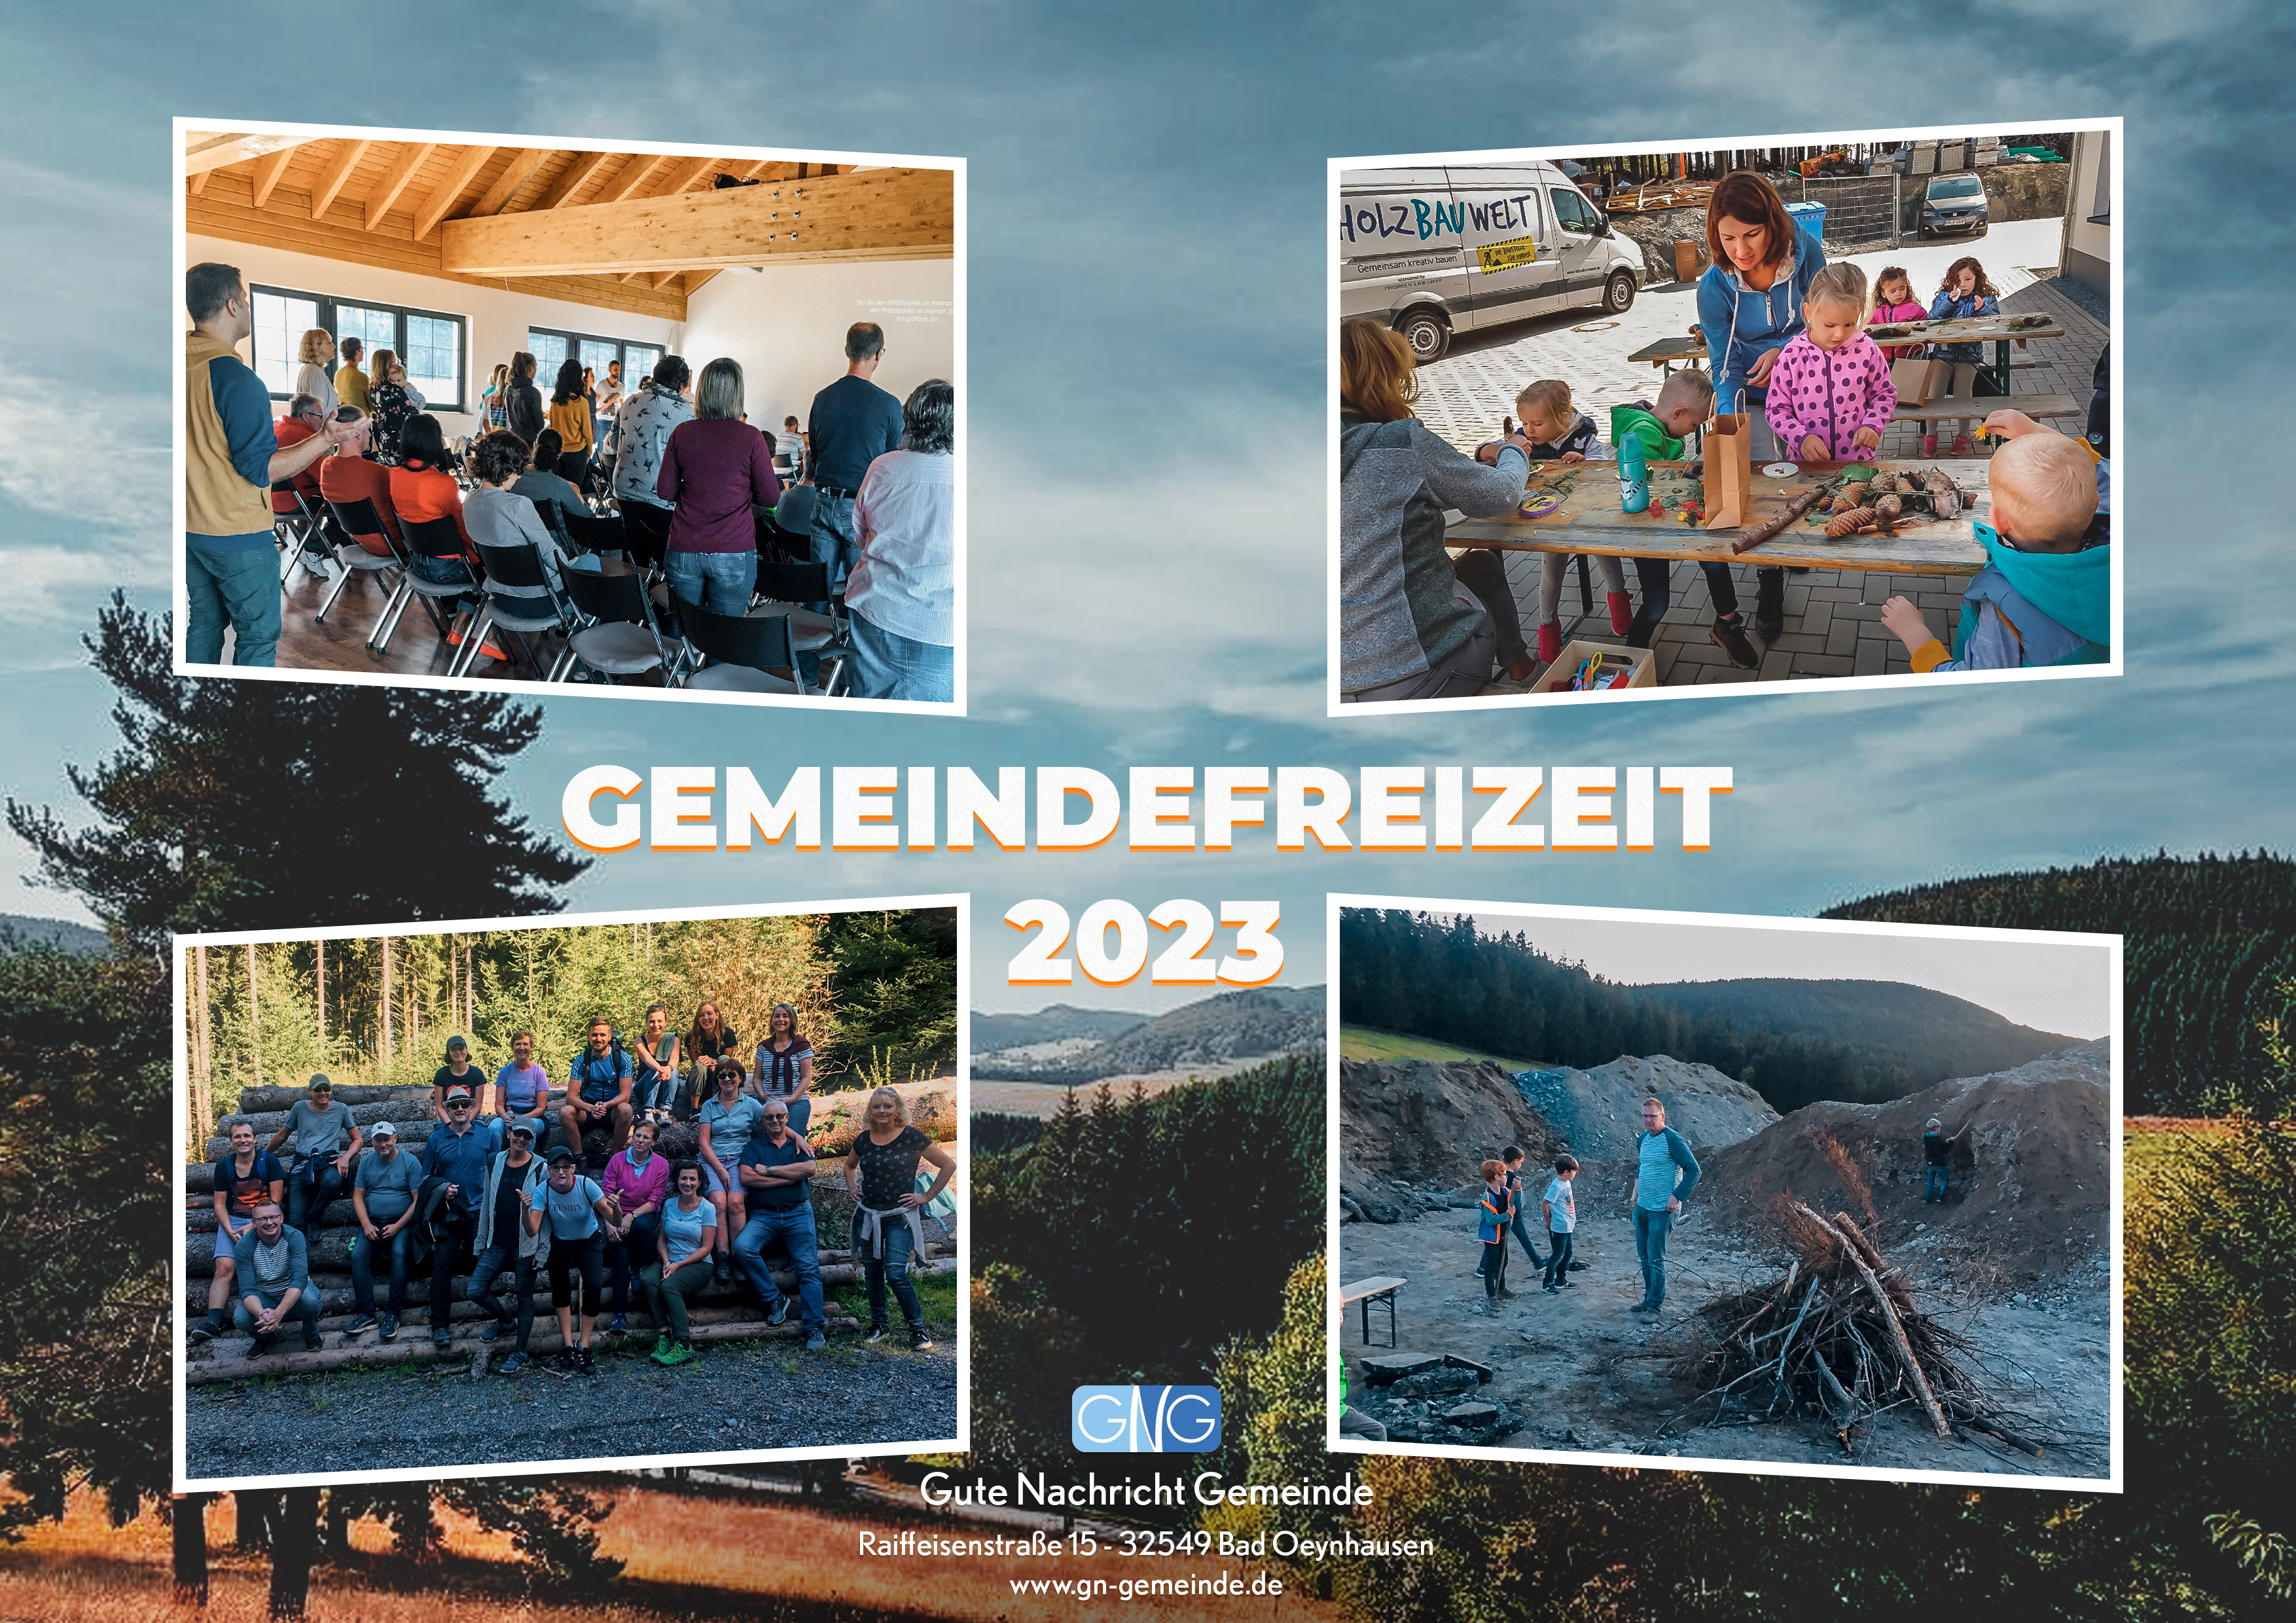 Gemeindefreizeit 2023